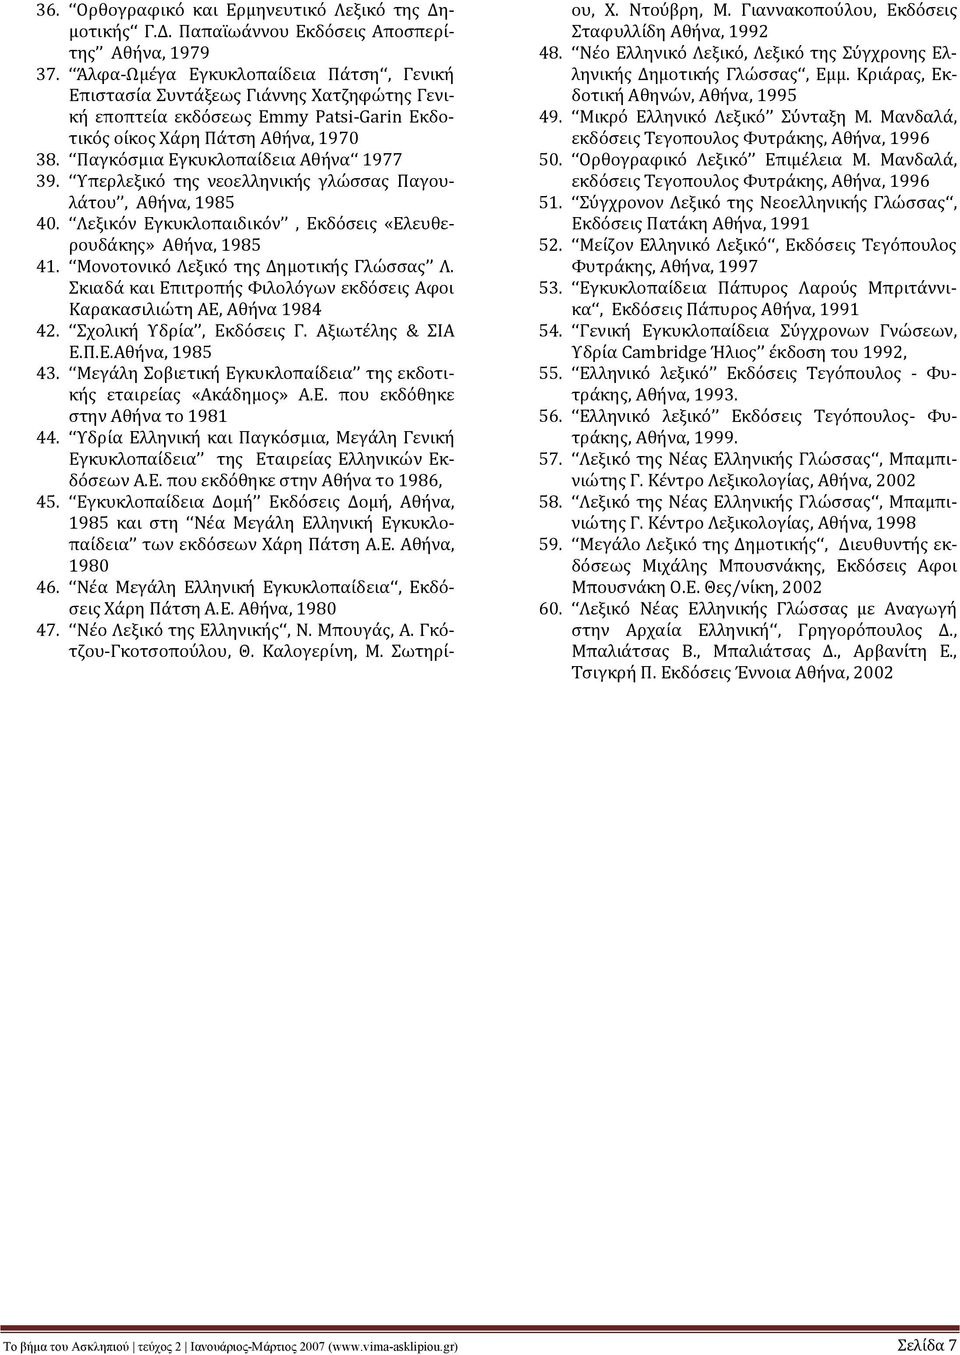 Παγκόσμια Εγκυκλοπαίδεια Αθήνα 1977 39. Υπερλεξικό της νεοελληνικής γλώσσας Παγουλάτου, Αθήνα, 1985 40. Λεξικόν Εγκυκλοπαιδικόν, Εκδόσεις «Ελευθερουδάκης» Αθήνα, 1985 41.